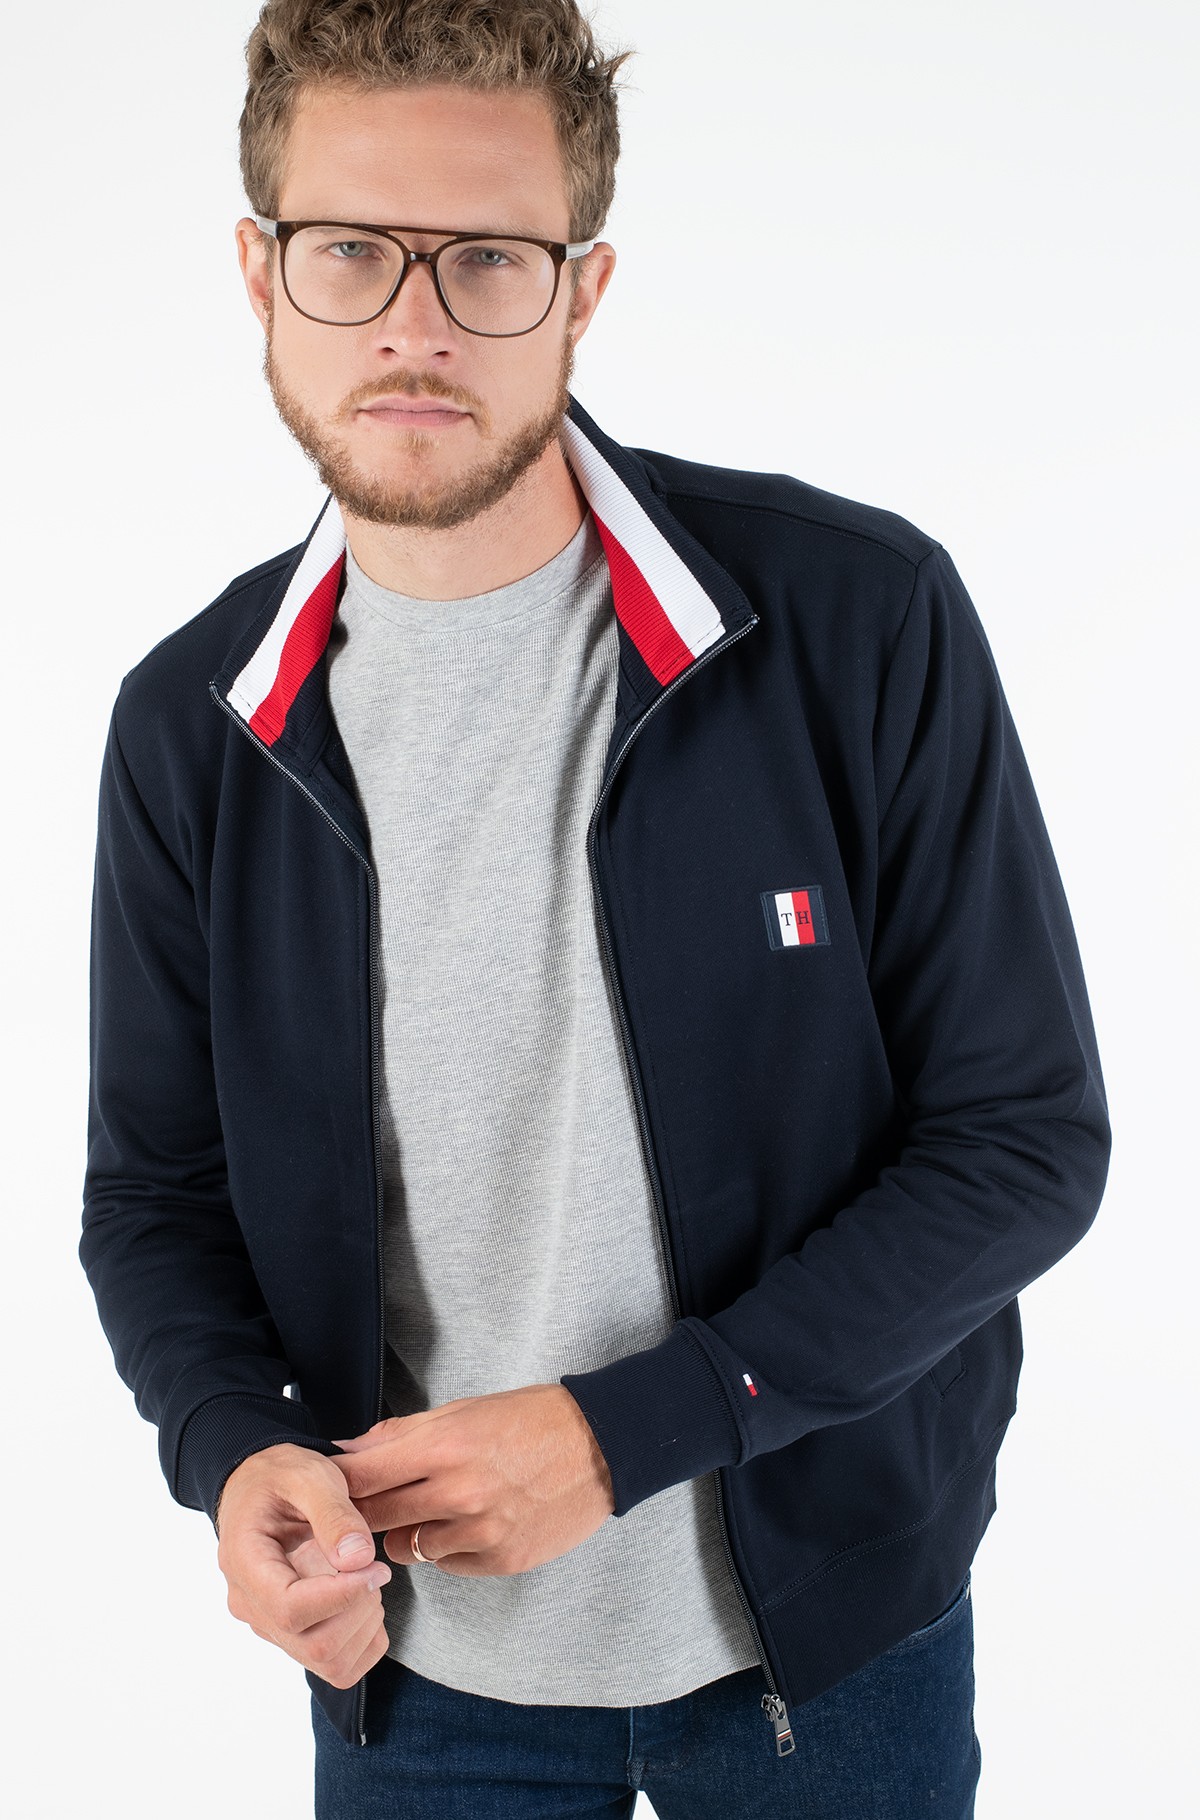 tommy hilfiger global stripe hoodie